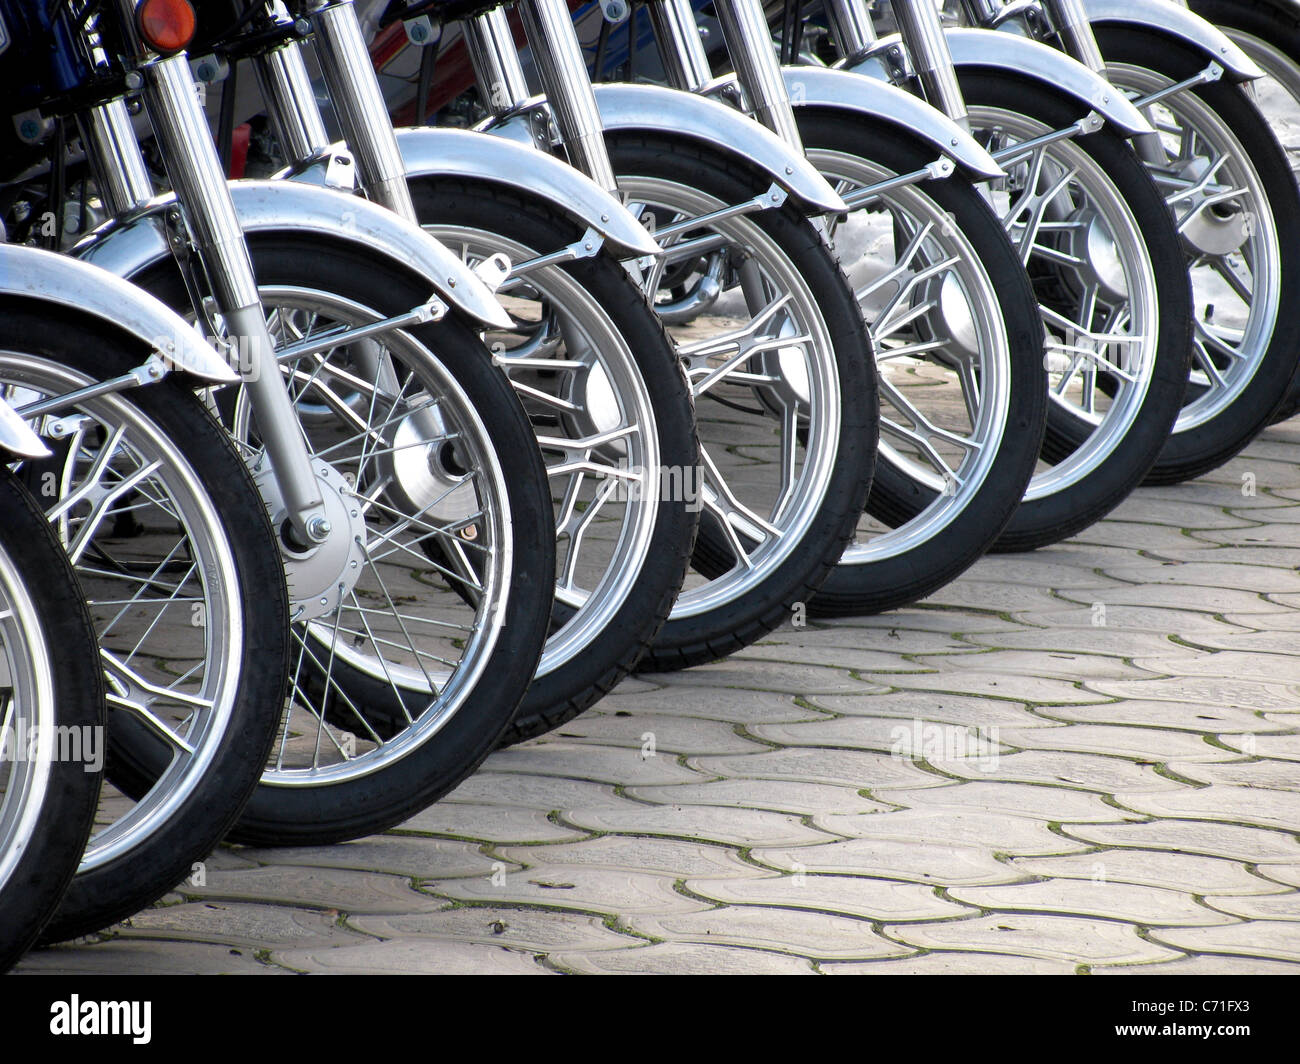 Fila de ruedas de motos Foto de stock